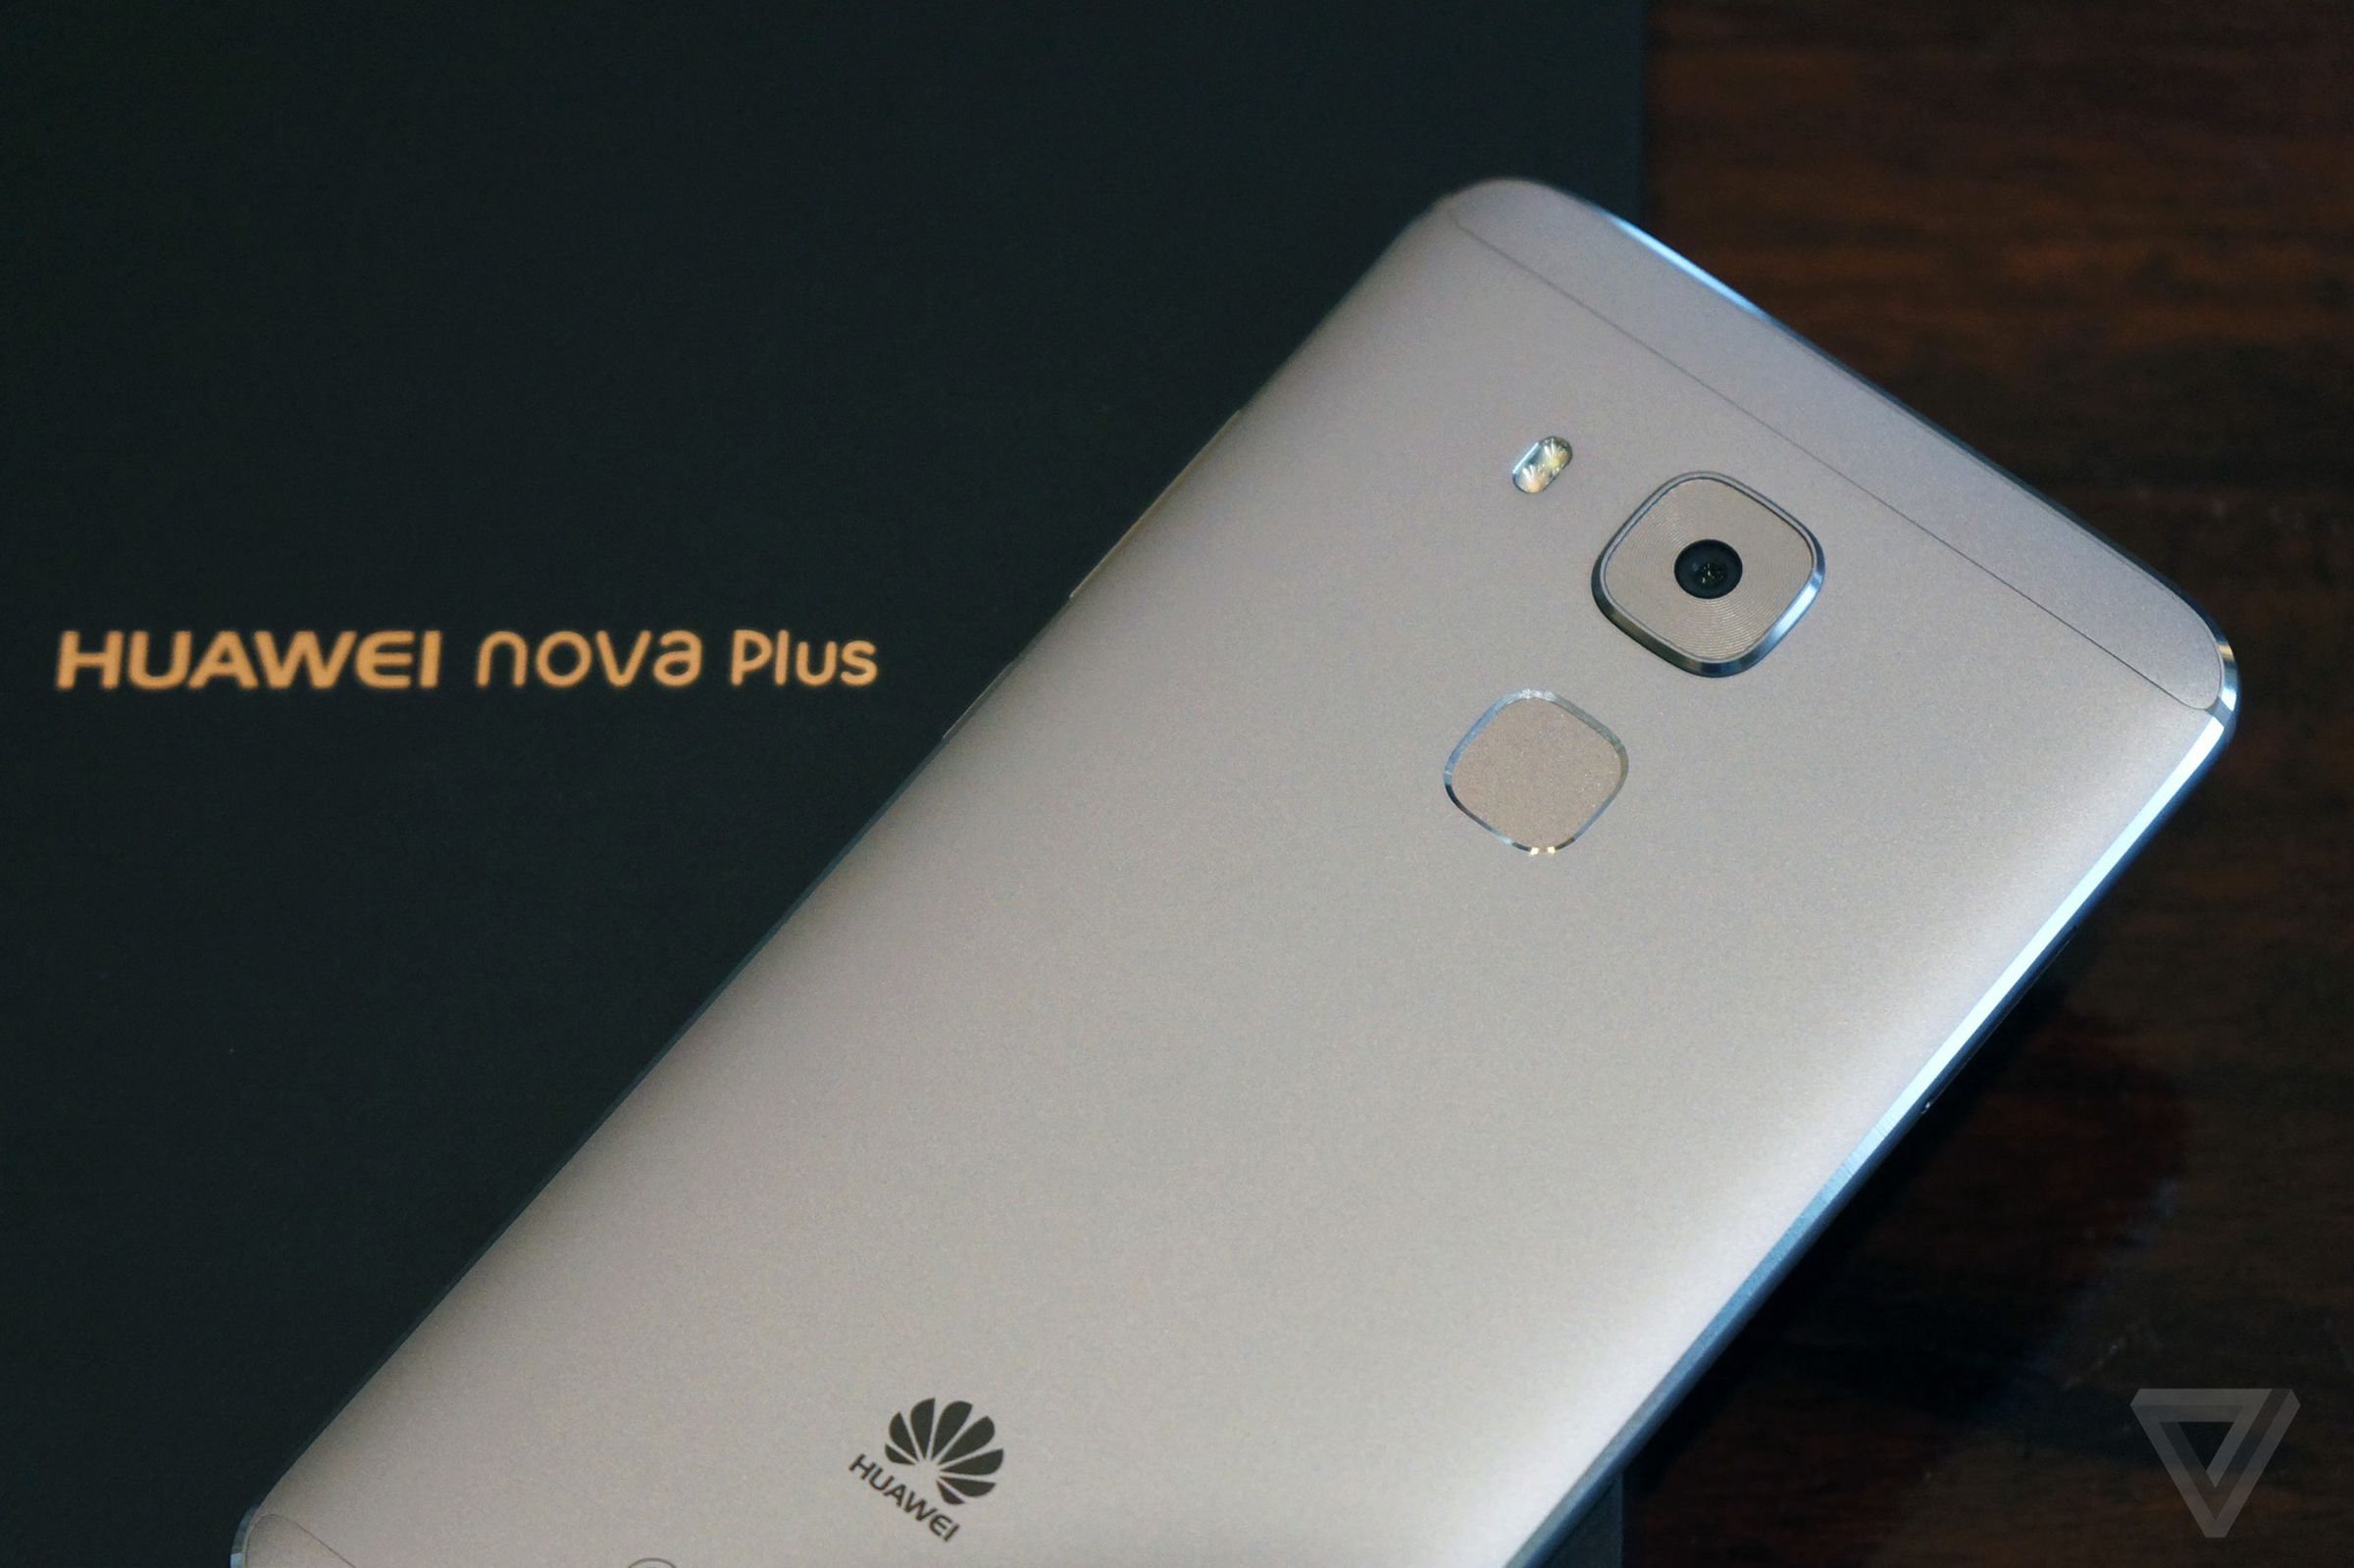 Huawei nova and nova Plus